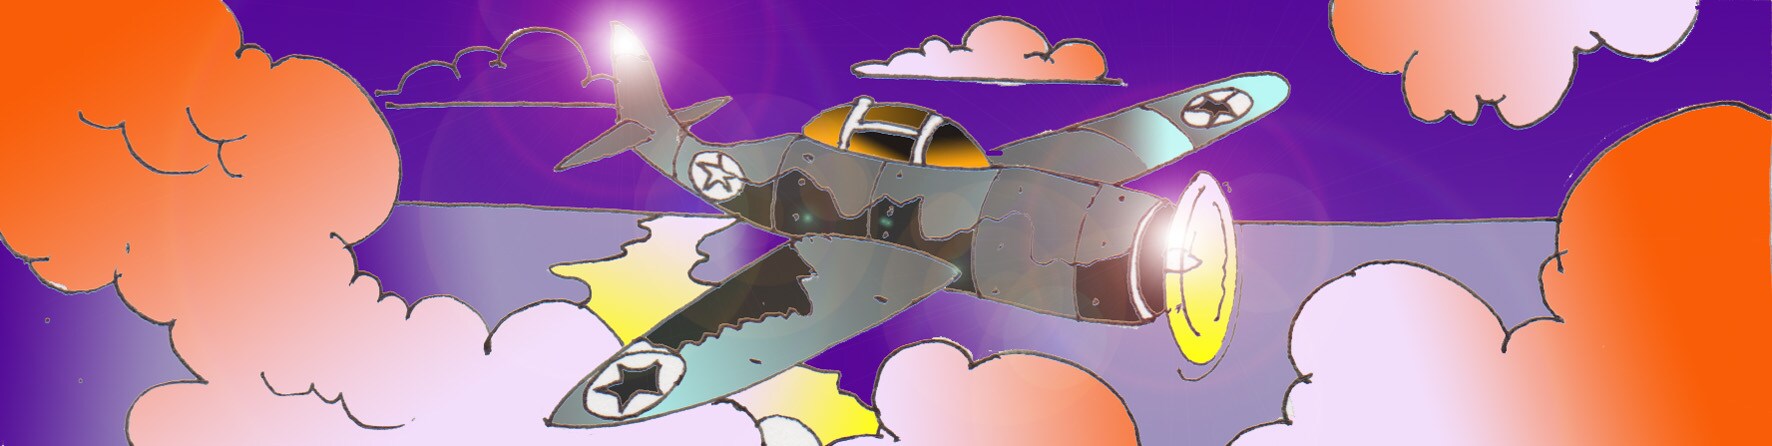 Immagine di aereo thunderbolt nel cielo (Per leggerne la descrizione proseguire nel link). ). Si vede l'aereo in volo tra le nuvole al tramonto.